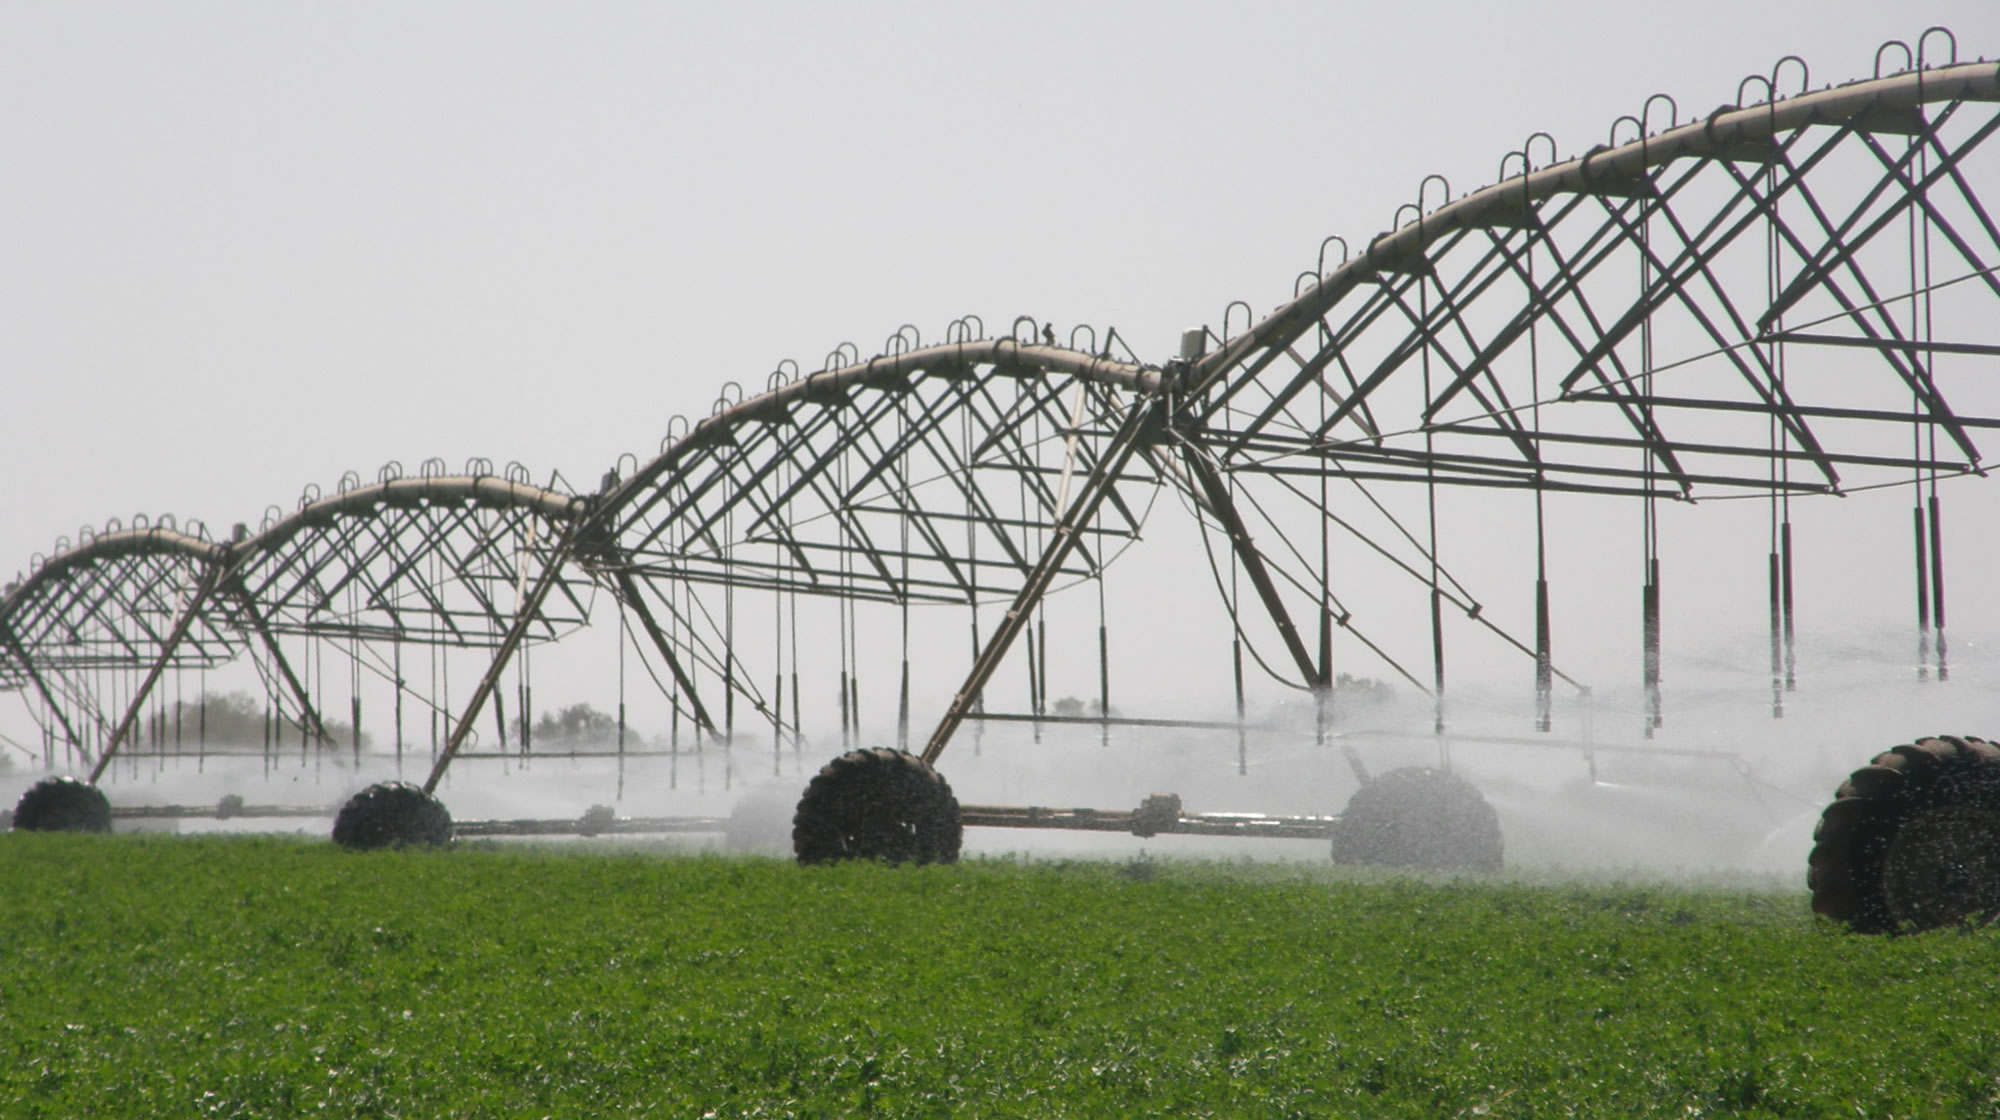 Nom : irrigation-equipment-pivot.jpg
Affichages : 96
Taille : 304,1 Ko